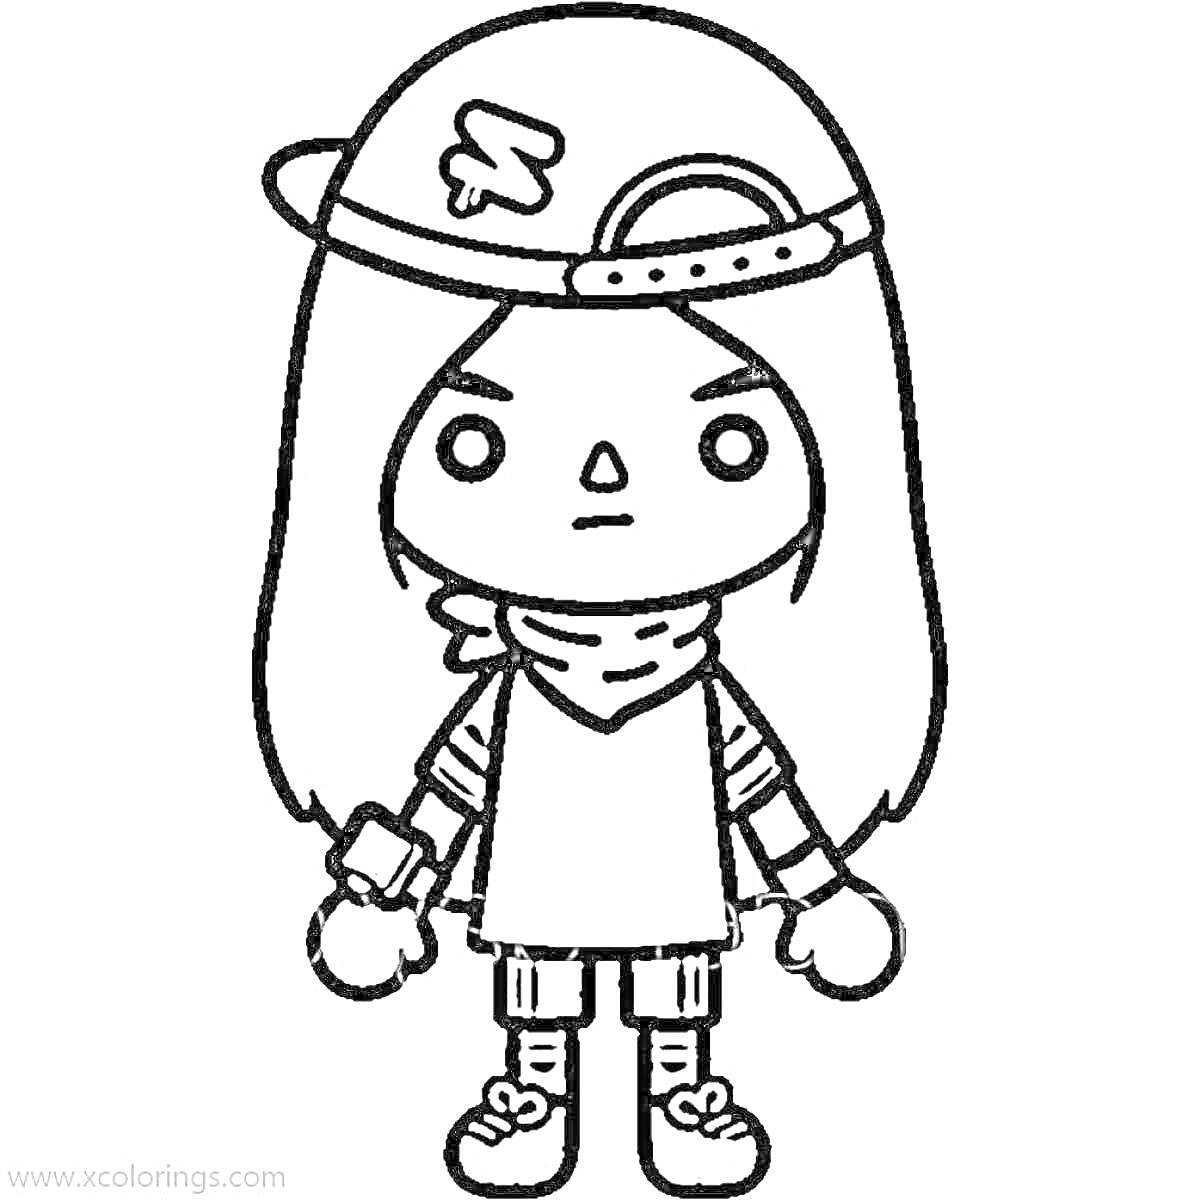 Раскраска Персонаж из Toca Boca в кепке, с длинными волосами, в бандане на шее, в футболке, шортах и кроссовках.